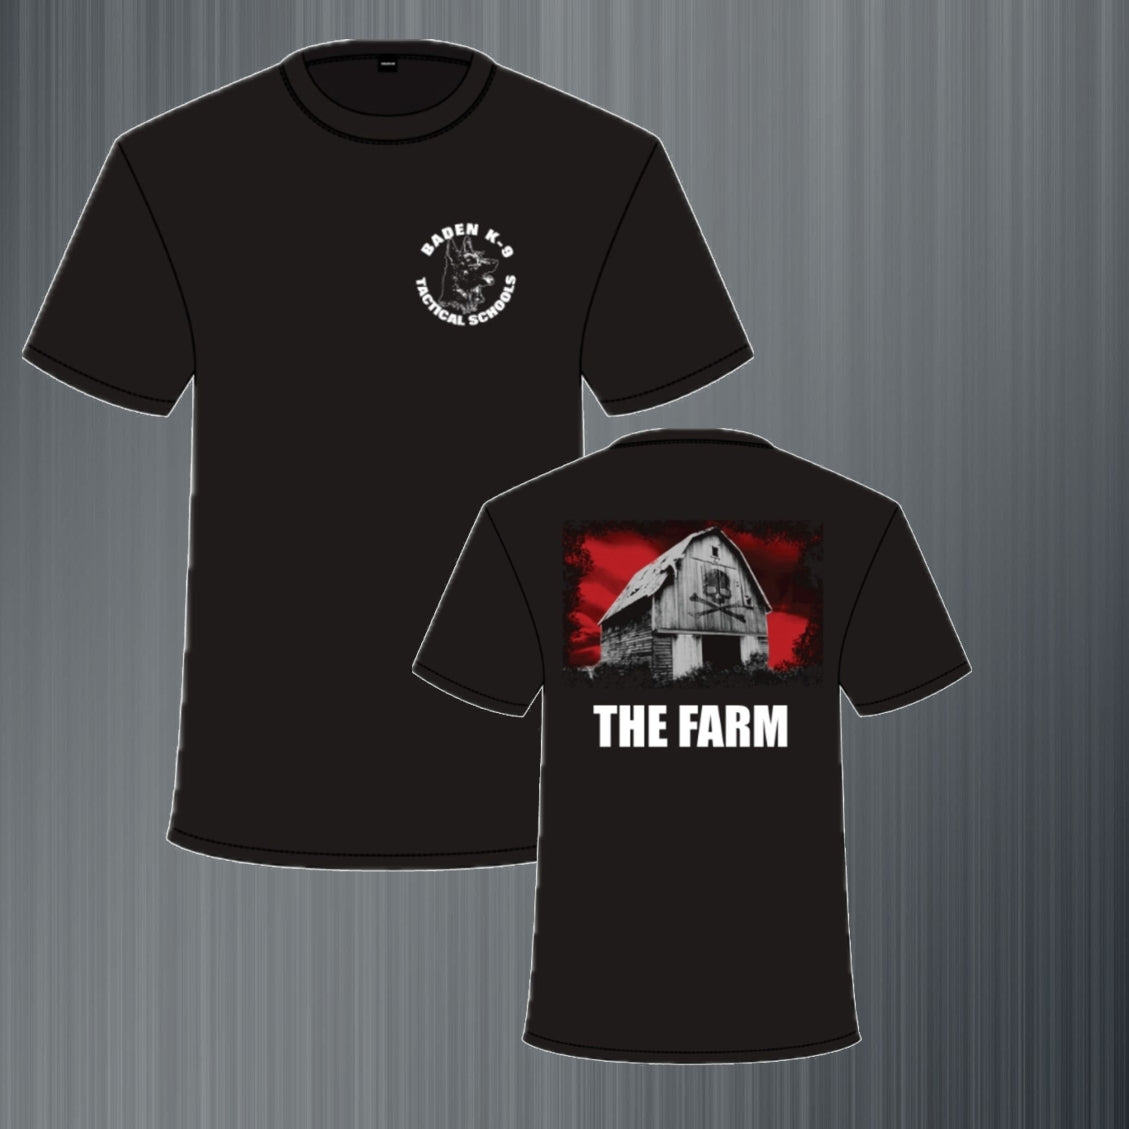 Baden K9 "The Farm" T-Shirt